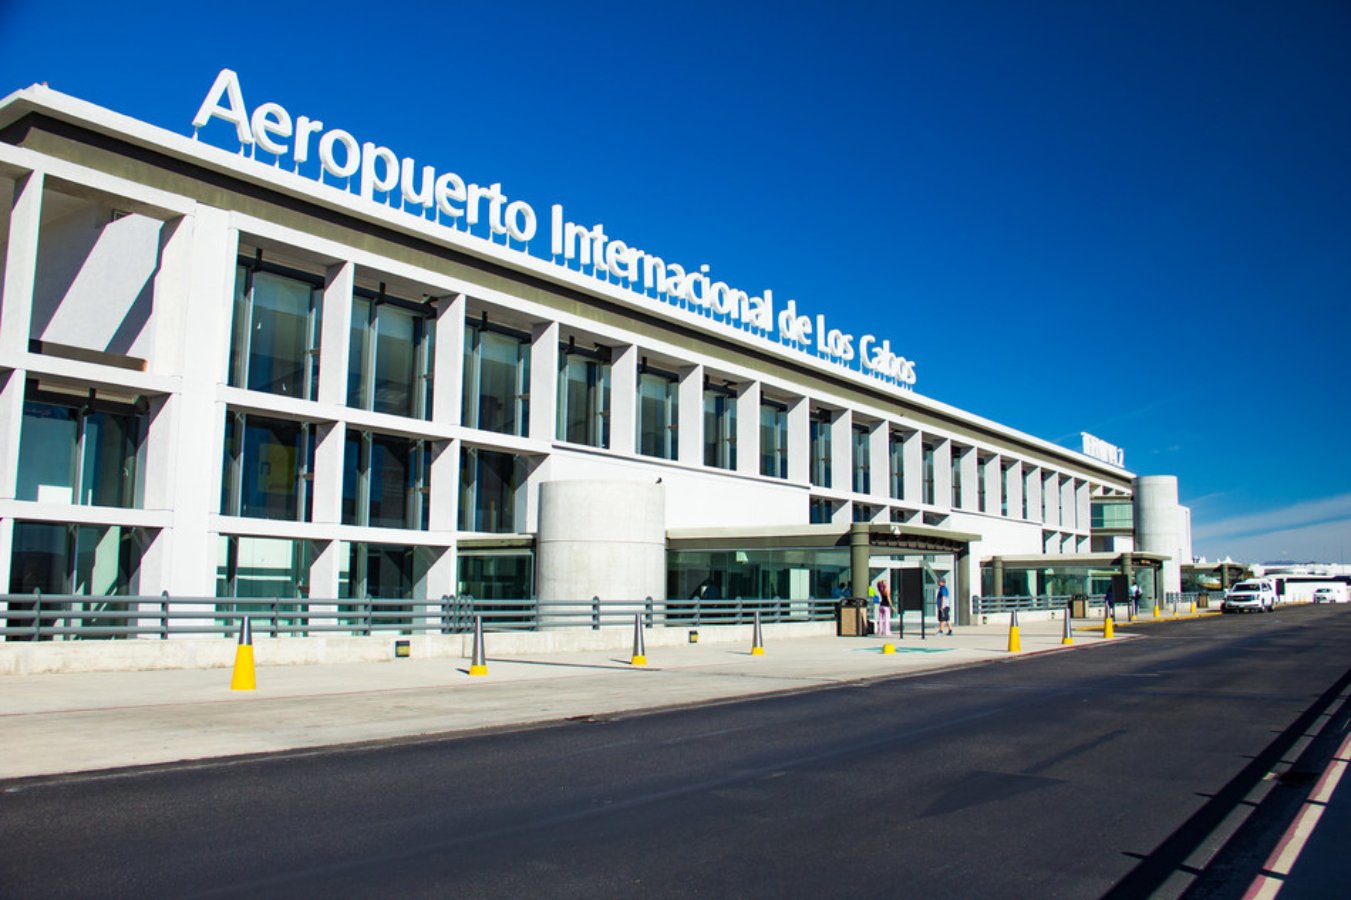 Edificio color blanco con ventanas cuadradas y en la parte de arriba con letras grandes y color blancas "Aeropuerto internacional de los Cabos". Semana Santa